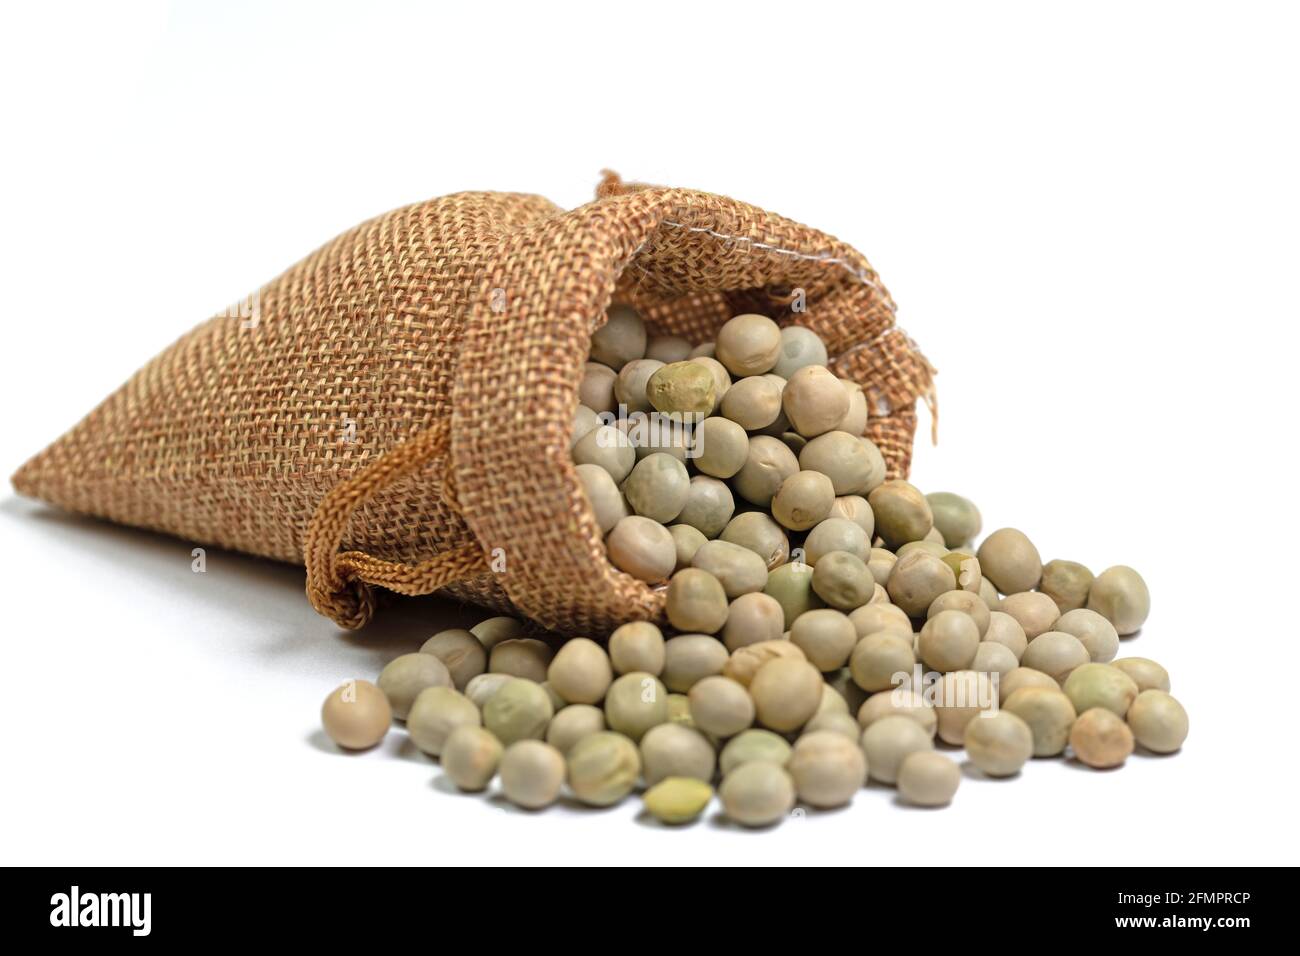 Guisantes secos en una bolsa de arpillera sobre un fondo blanco Foto de stock